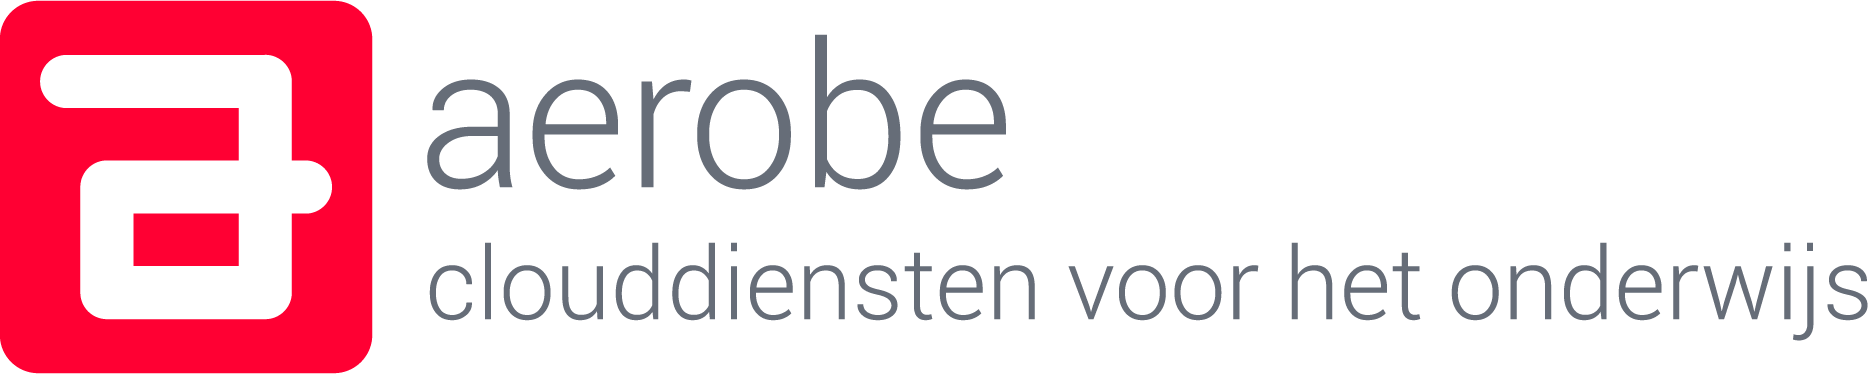 Aerobe-basis-logo.png